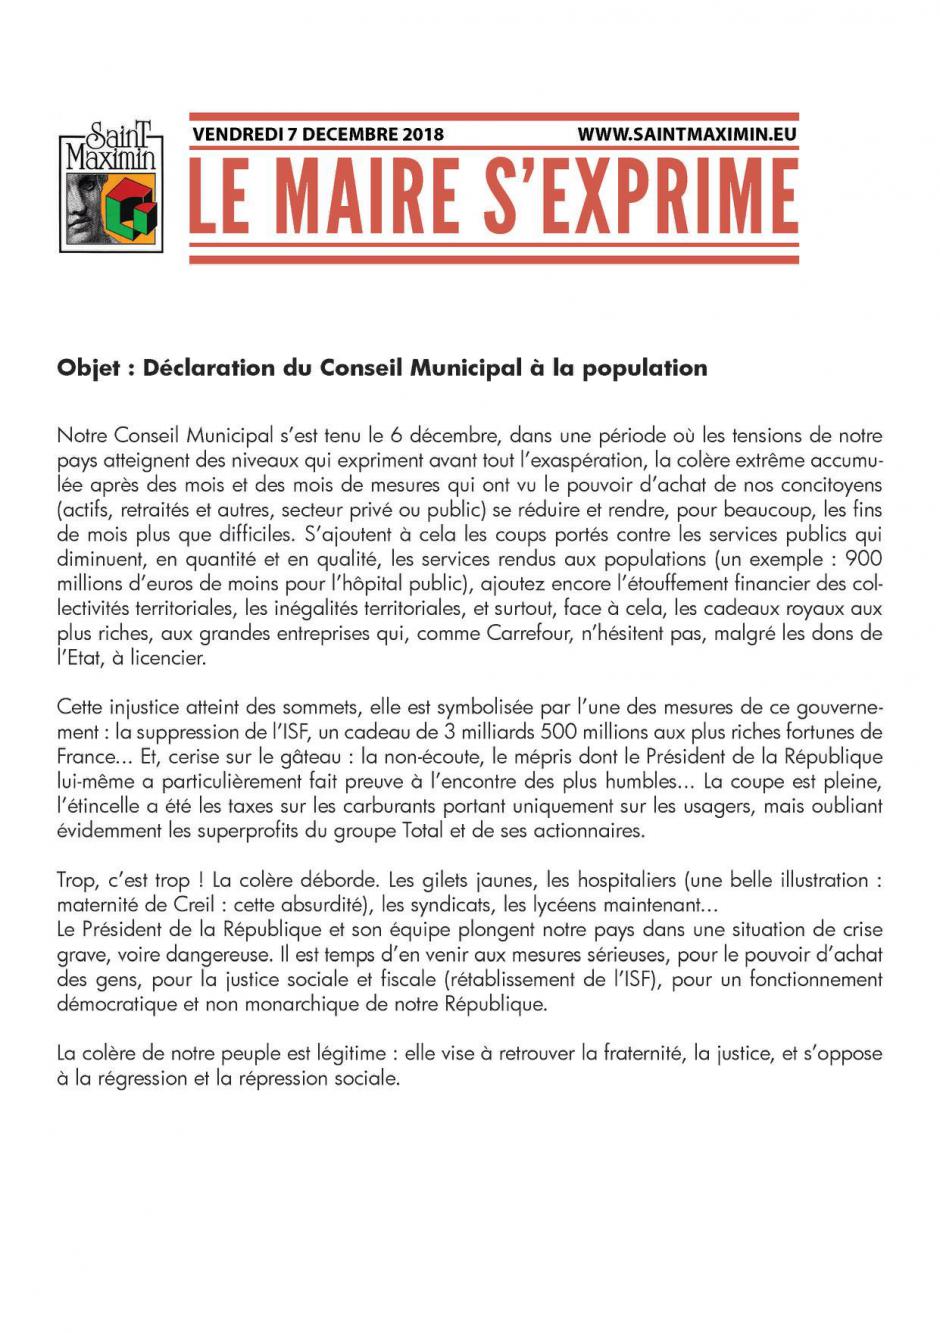 Déclaration du Conseil municipal de Saint-Maximin à la population - 6 décembre 2018